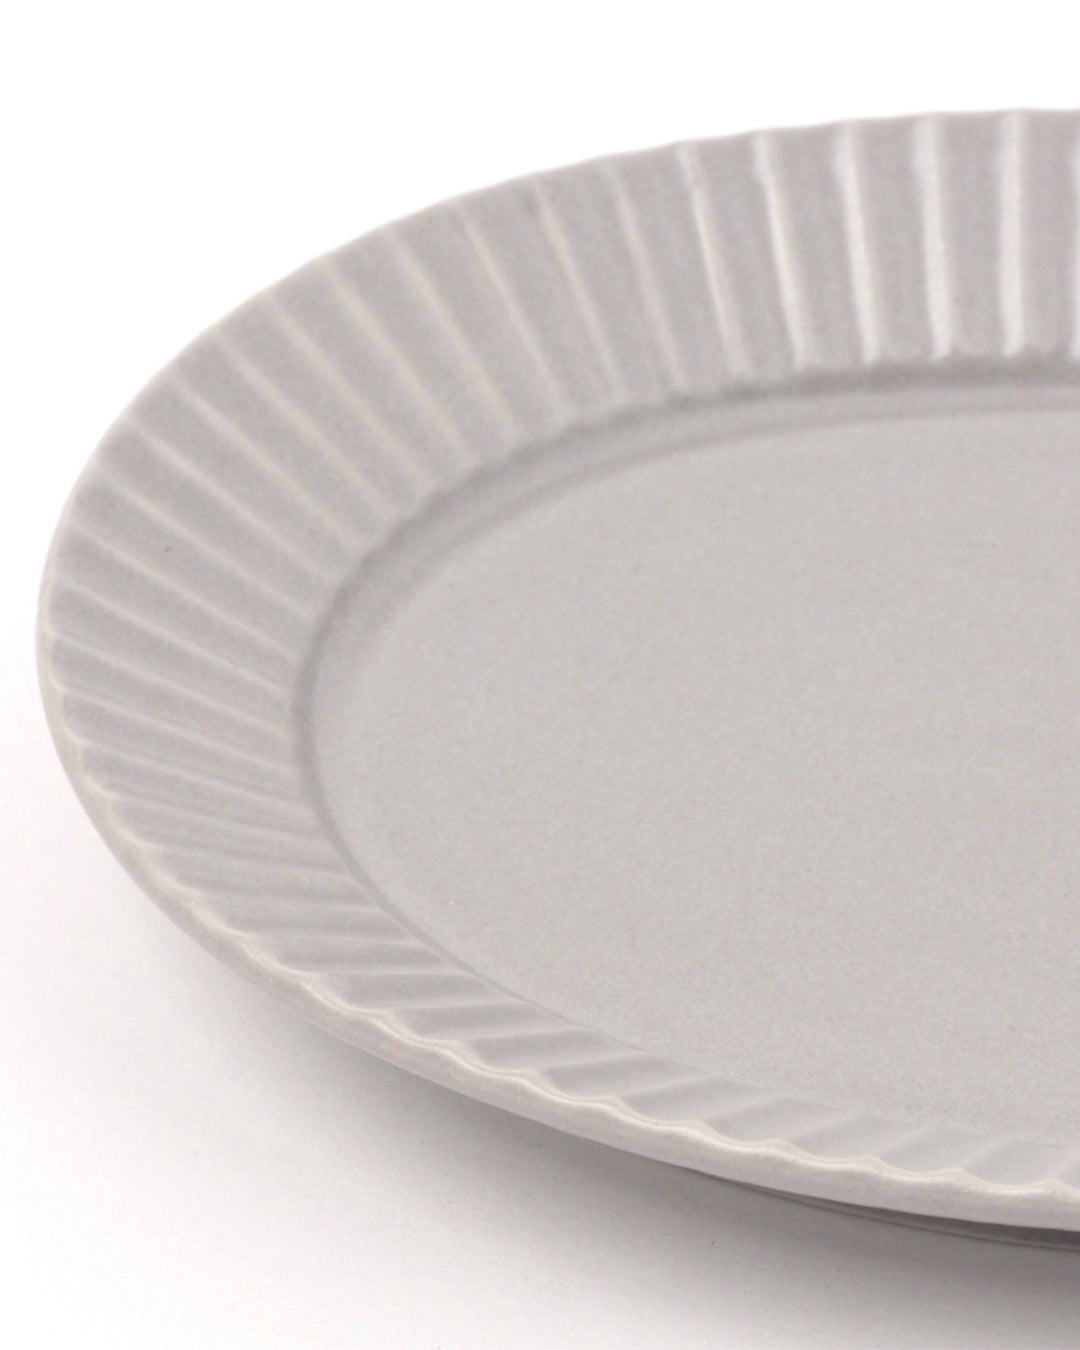 Lakole Mino Ware Small Oval Platter - Grey